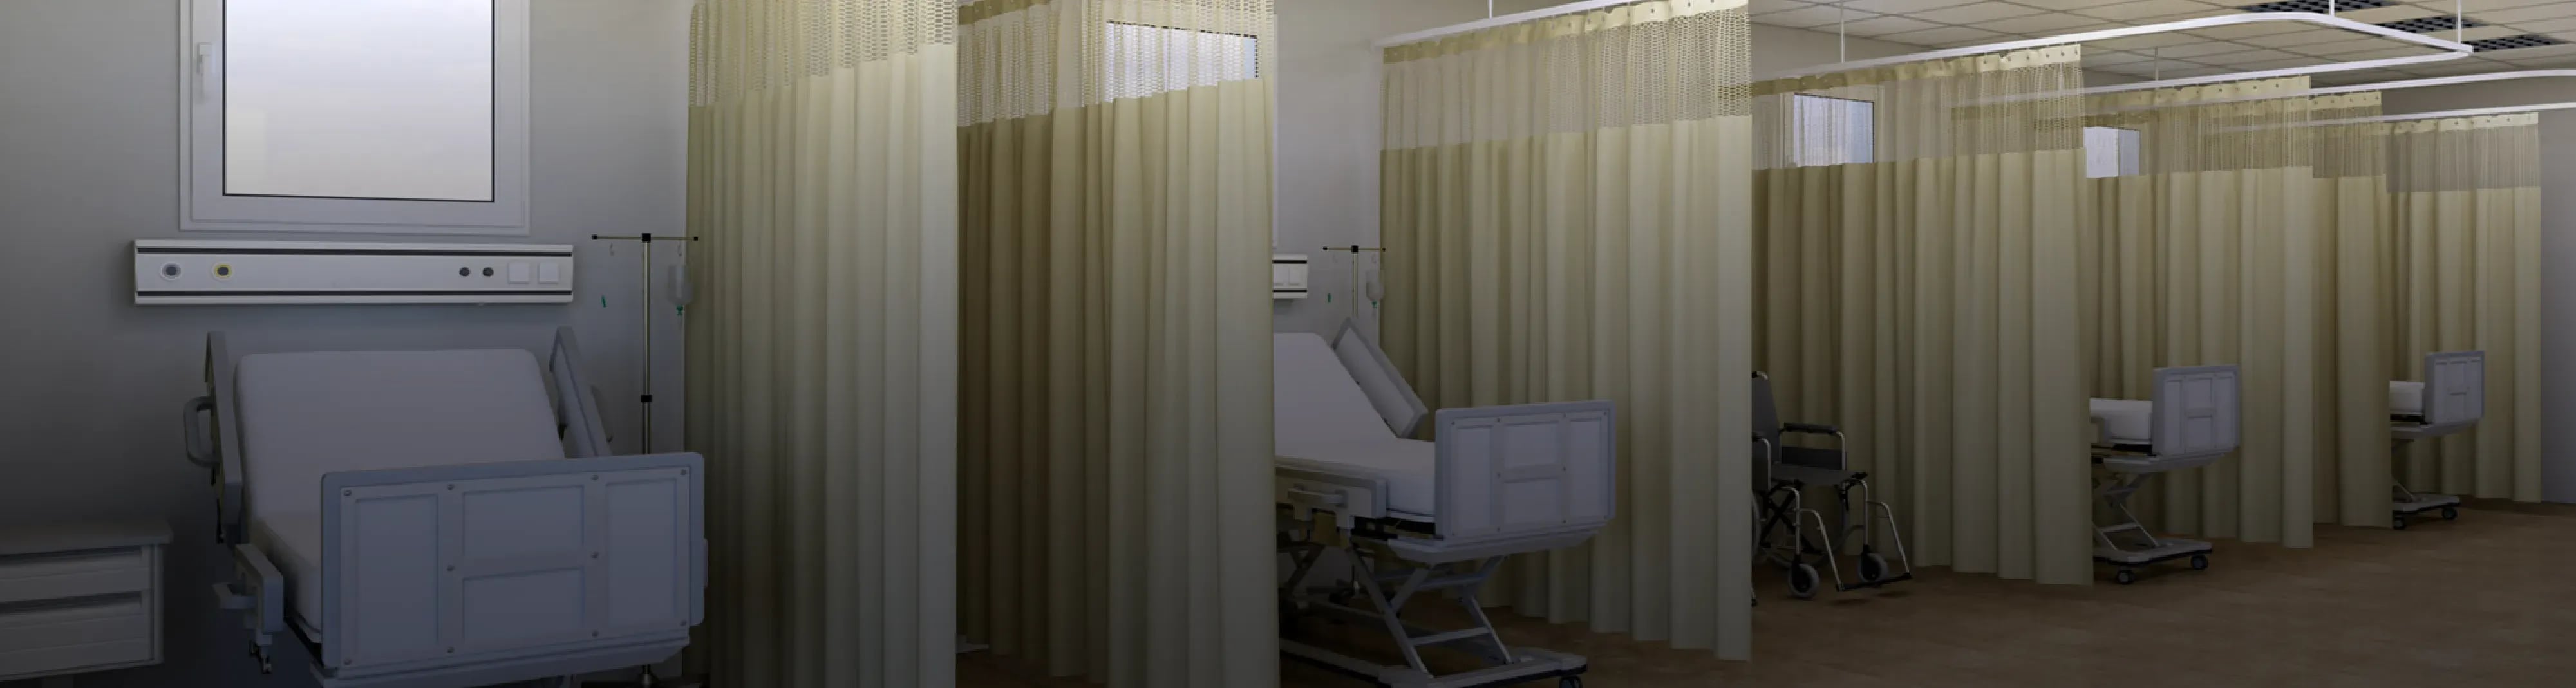 Hospital & Medical Curtains